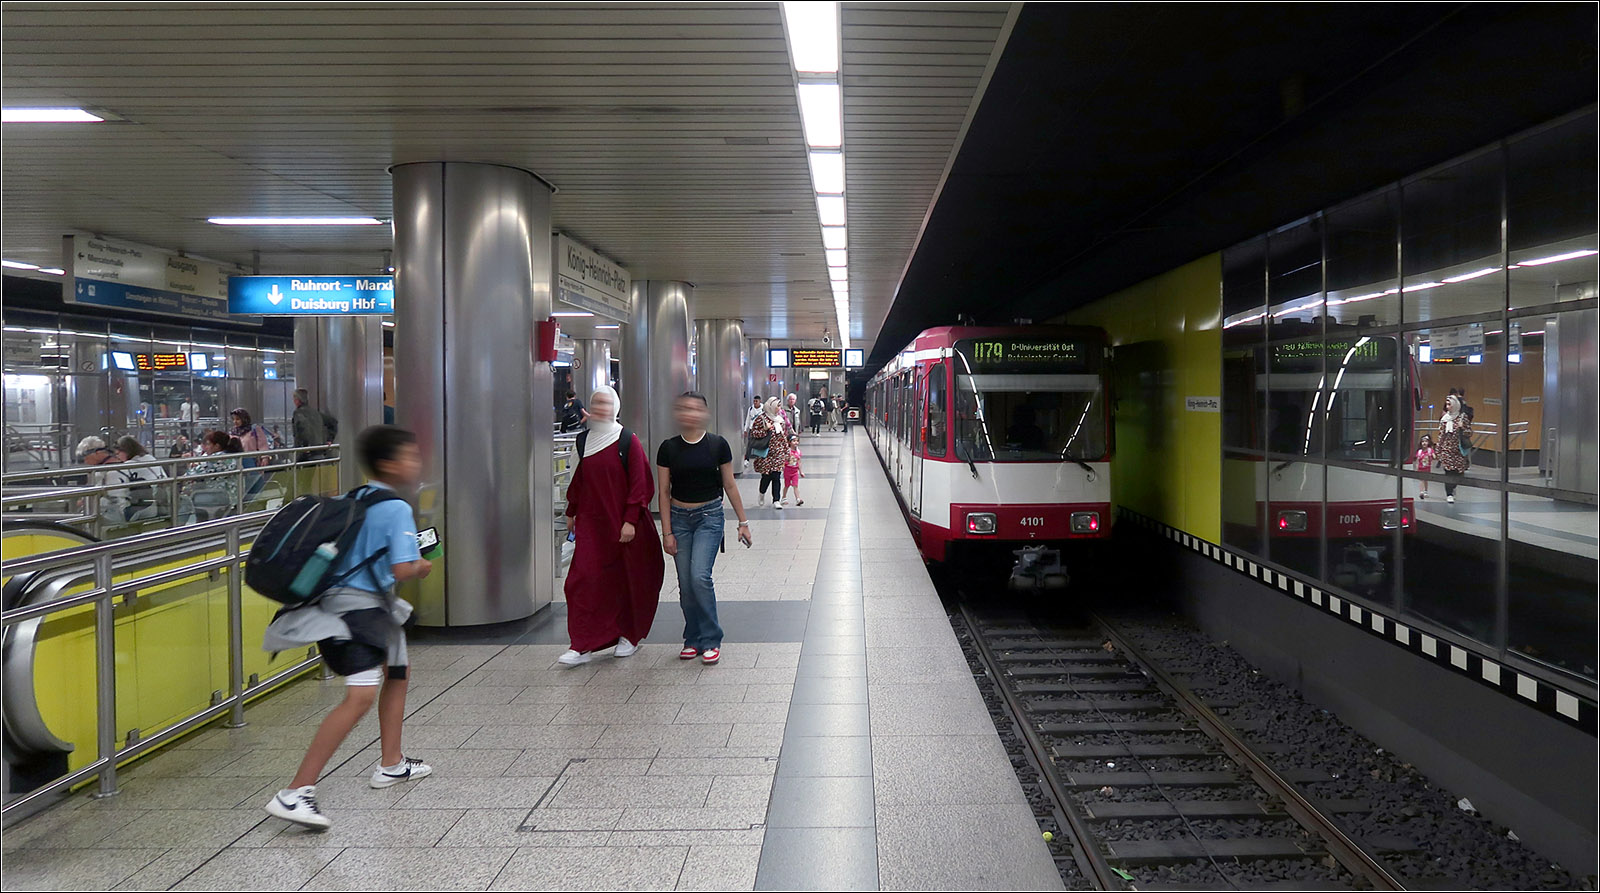 Unter Duisburger Fußgängerzone - 

... liegt die doppelstöckige, viergleisige Station König-Heinrich-Platz. In der oberen Ebene (Bild) verkehren die Linien U79 und 903, während ein Stockwerk tiefer die Linie 901 verkehrt. Die beiden Strecken fahren hier also im Linienbetrieb, während am benachbarten Hauptbahnhof Richtungsbetrieb herrscht, um am selben Bahnsteig direkt umsteigen zu können. Die großzügigen viergleisige Tunnelanlagen sind nur, wie an vielen anderen Stellen der Stadtbahn Rhein-Ruhr nur mit der ursprünglichen Planungen einer echten U-Bahn für das gesamte Ruhrgebiet einschließlich Düsseldorf zu verstehen. 

23.08.2023 (M)